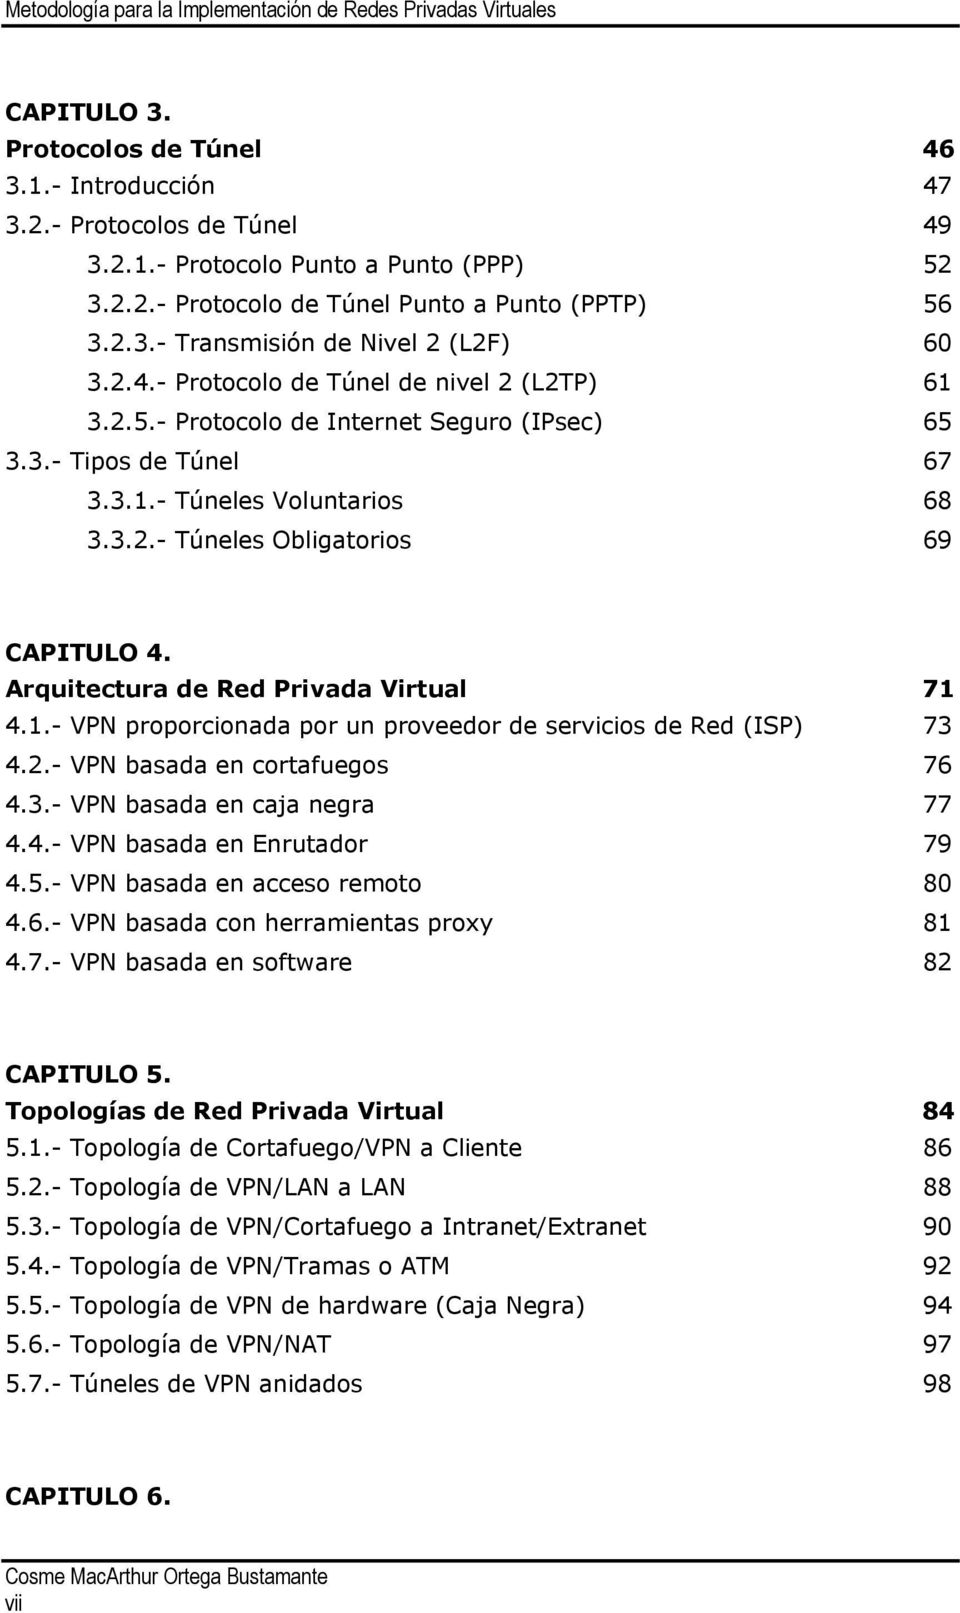 Arquitectura de Red Privada Virtual 71 4.1.- VPN proporcionada por un proveedor de servicios de Red (ISP) 73 4.2.- VPN basada en cortafuegos 76 4.3.- VPN basada en caja negra 77 4.4.- VPN basada en Enrutador 79 4.